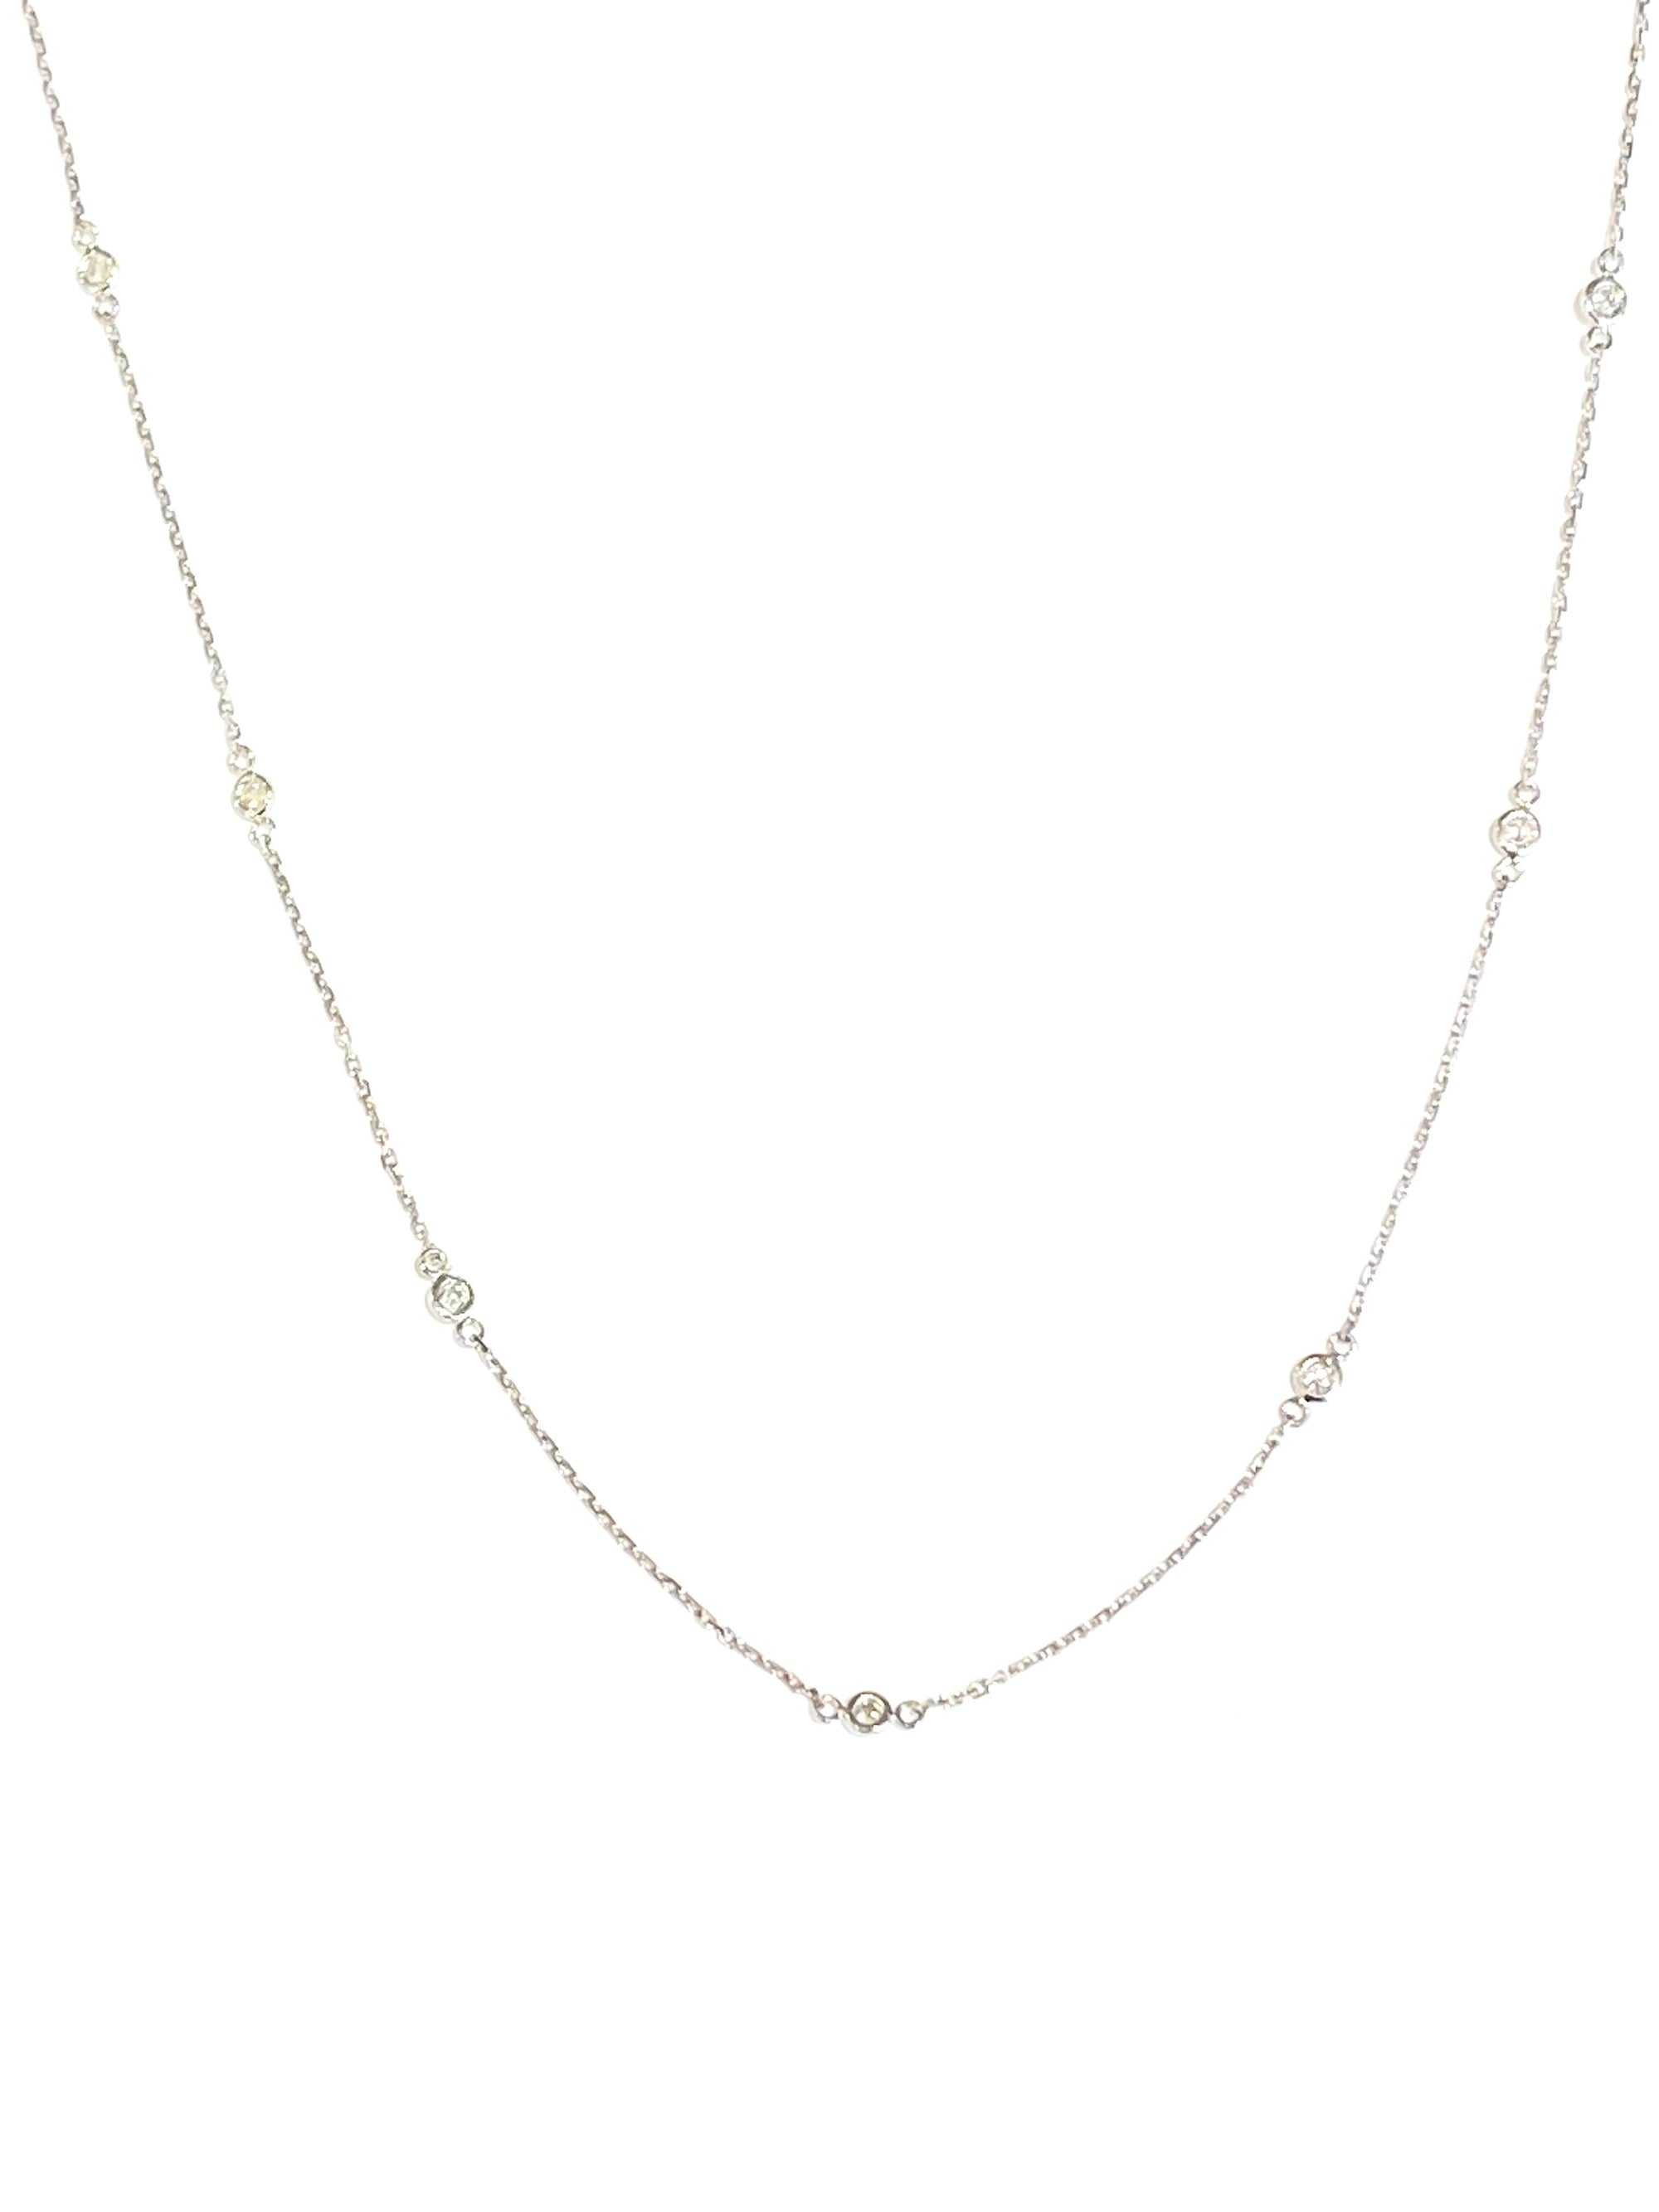 14k White Gold Diamond Station Necklace